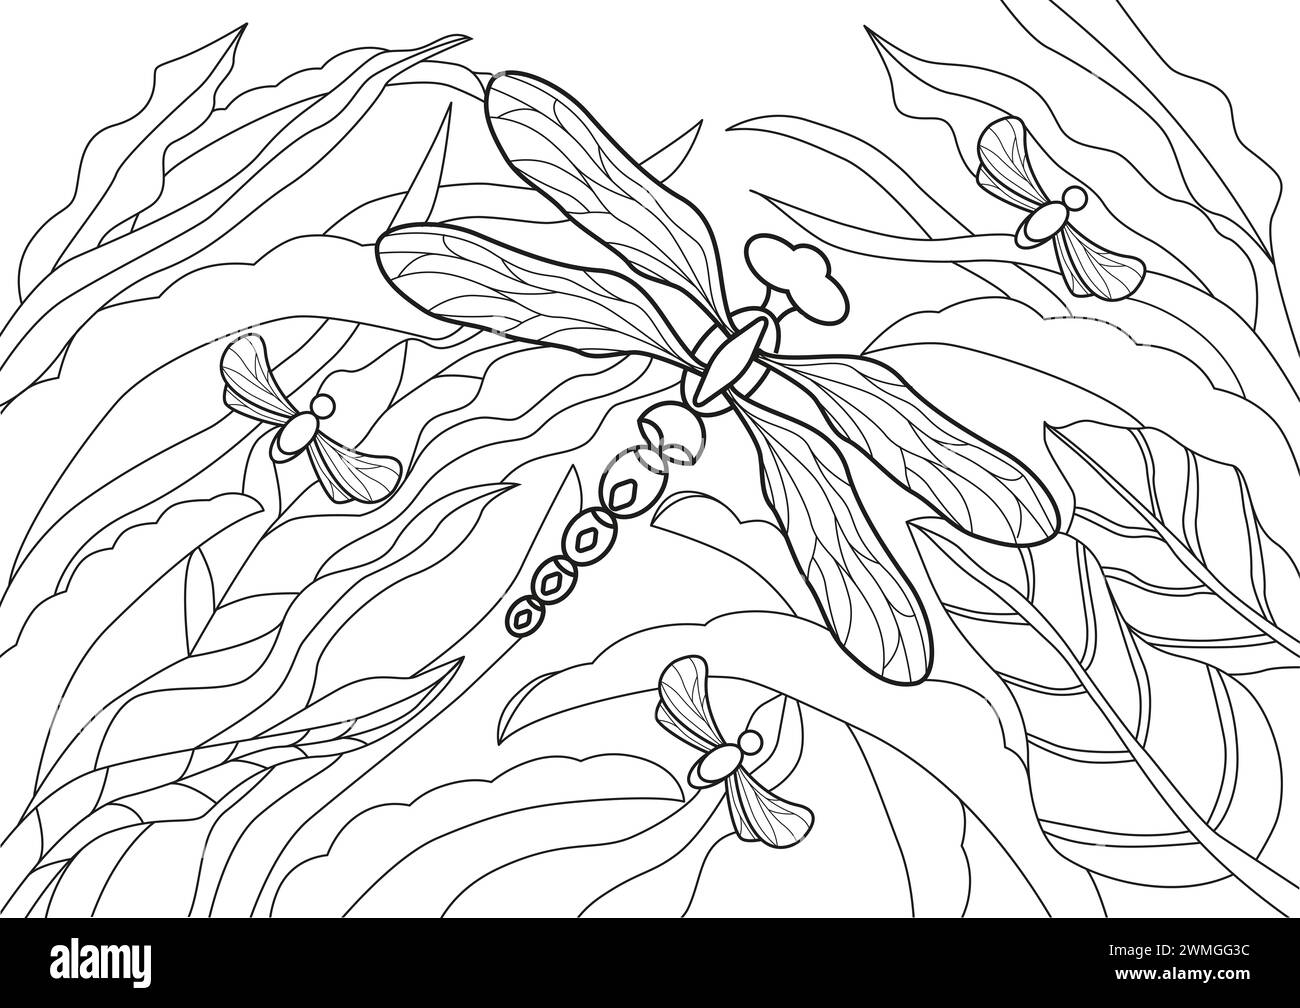 Pagina colorata Flying libellfly disegnata a mano per rilassamento e sollievo dallo stress. Libro da colorare per adulti con scarabocchi ed elementi di design. Foto Stock